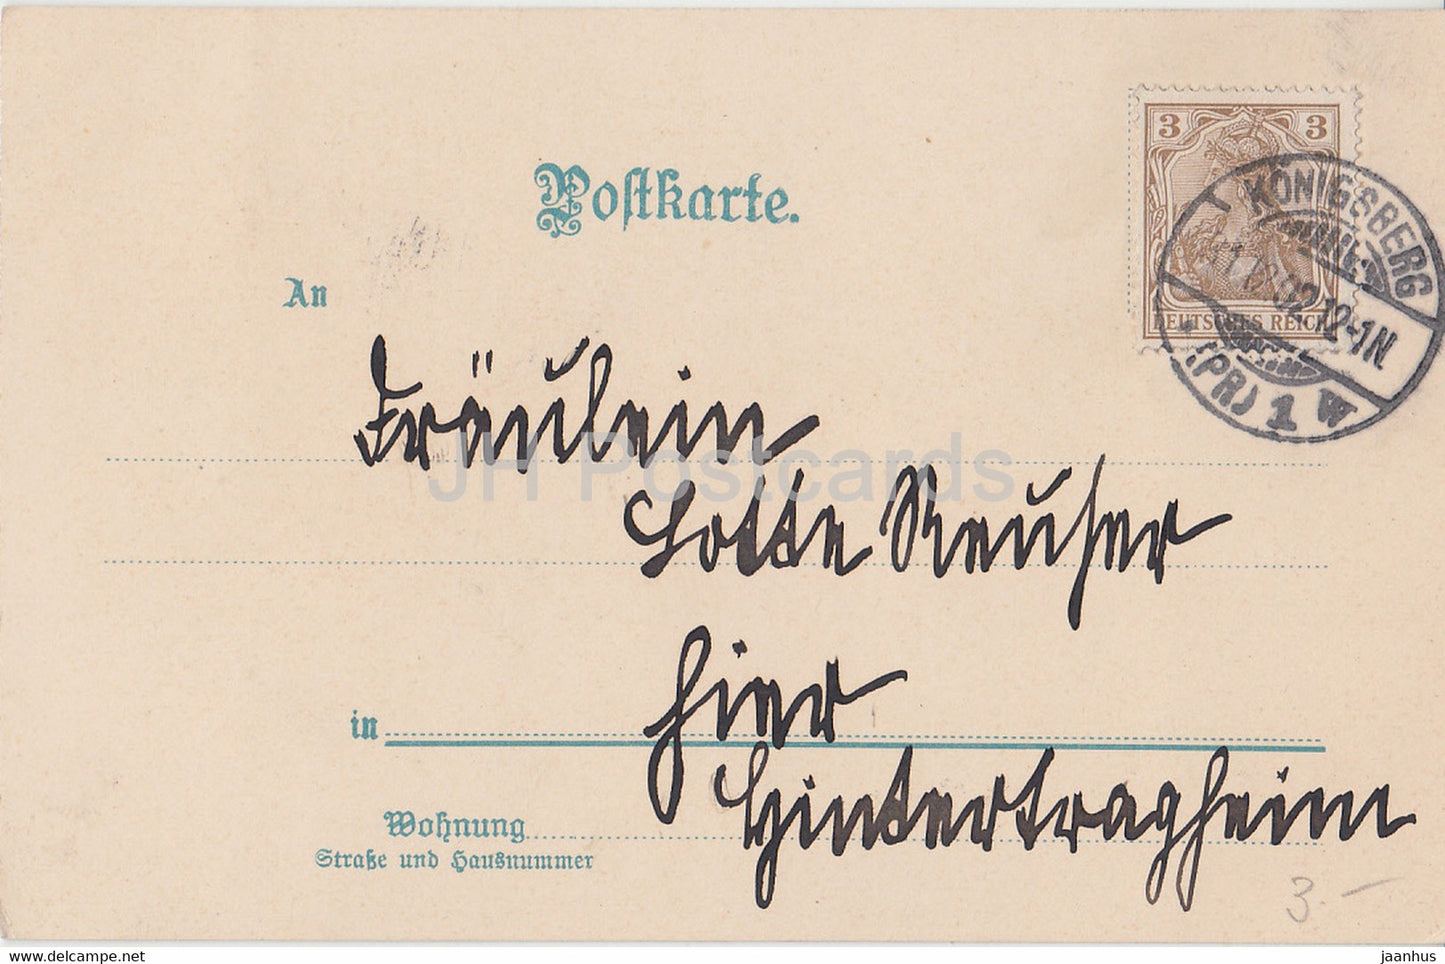 Carte de vœux du Nouvel An - Herzlichen Gluckwunsch zum Neuen Jahr - hiver - carte postale ancienne moulin à eau - 1902 - Allemagne - utilisé